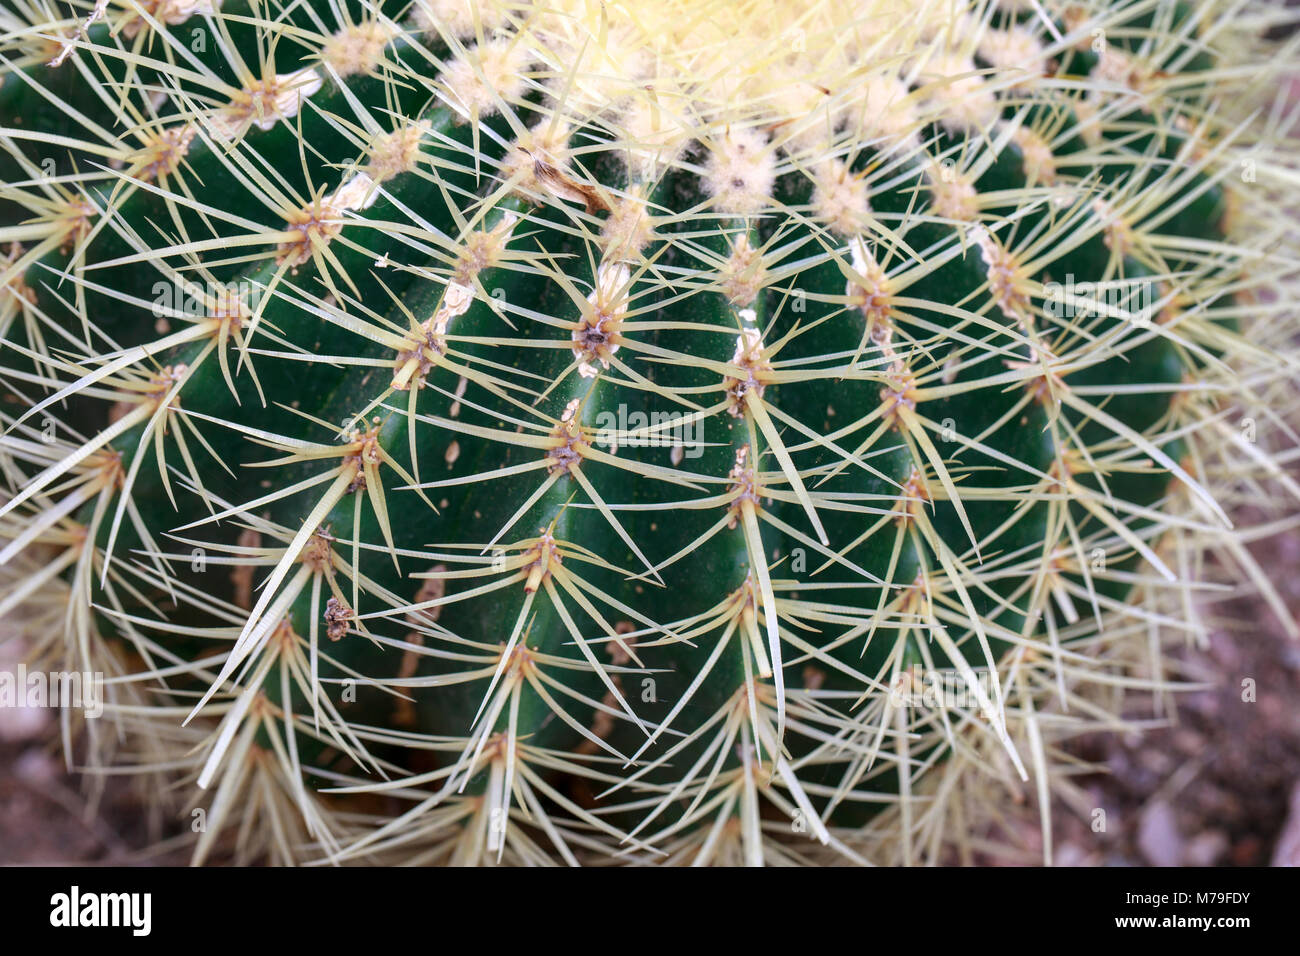 Golden Barrel Cactus (Echinocactus grusonii), a species of Cacti originating from Mexico. Stock Photo